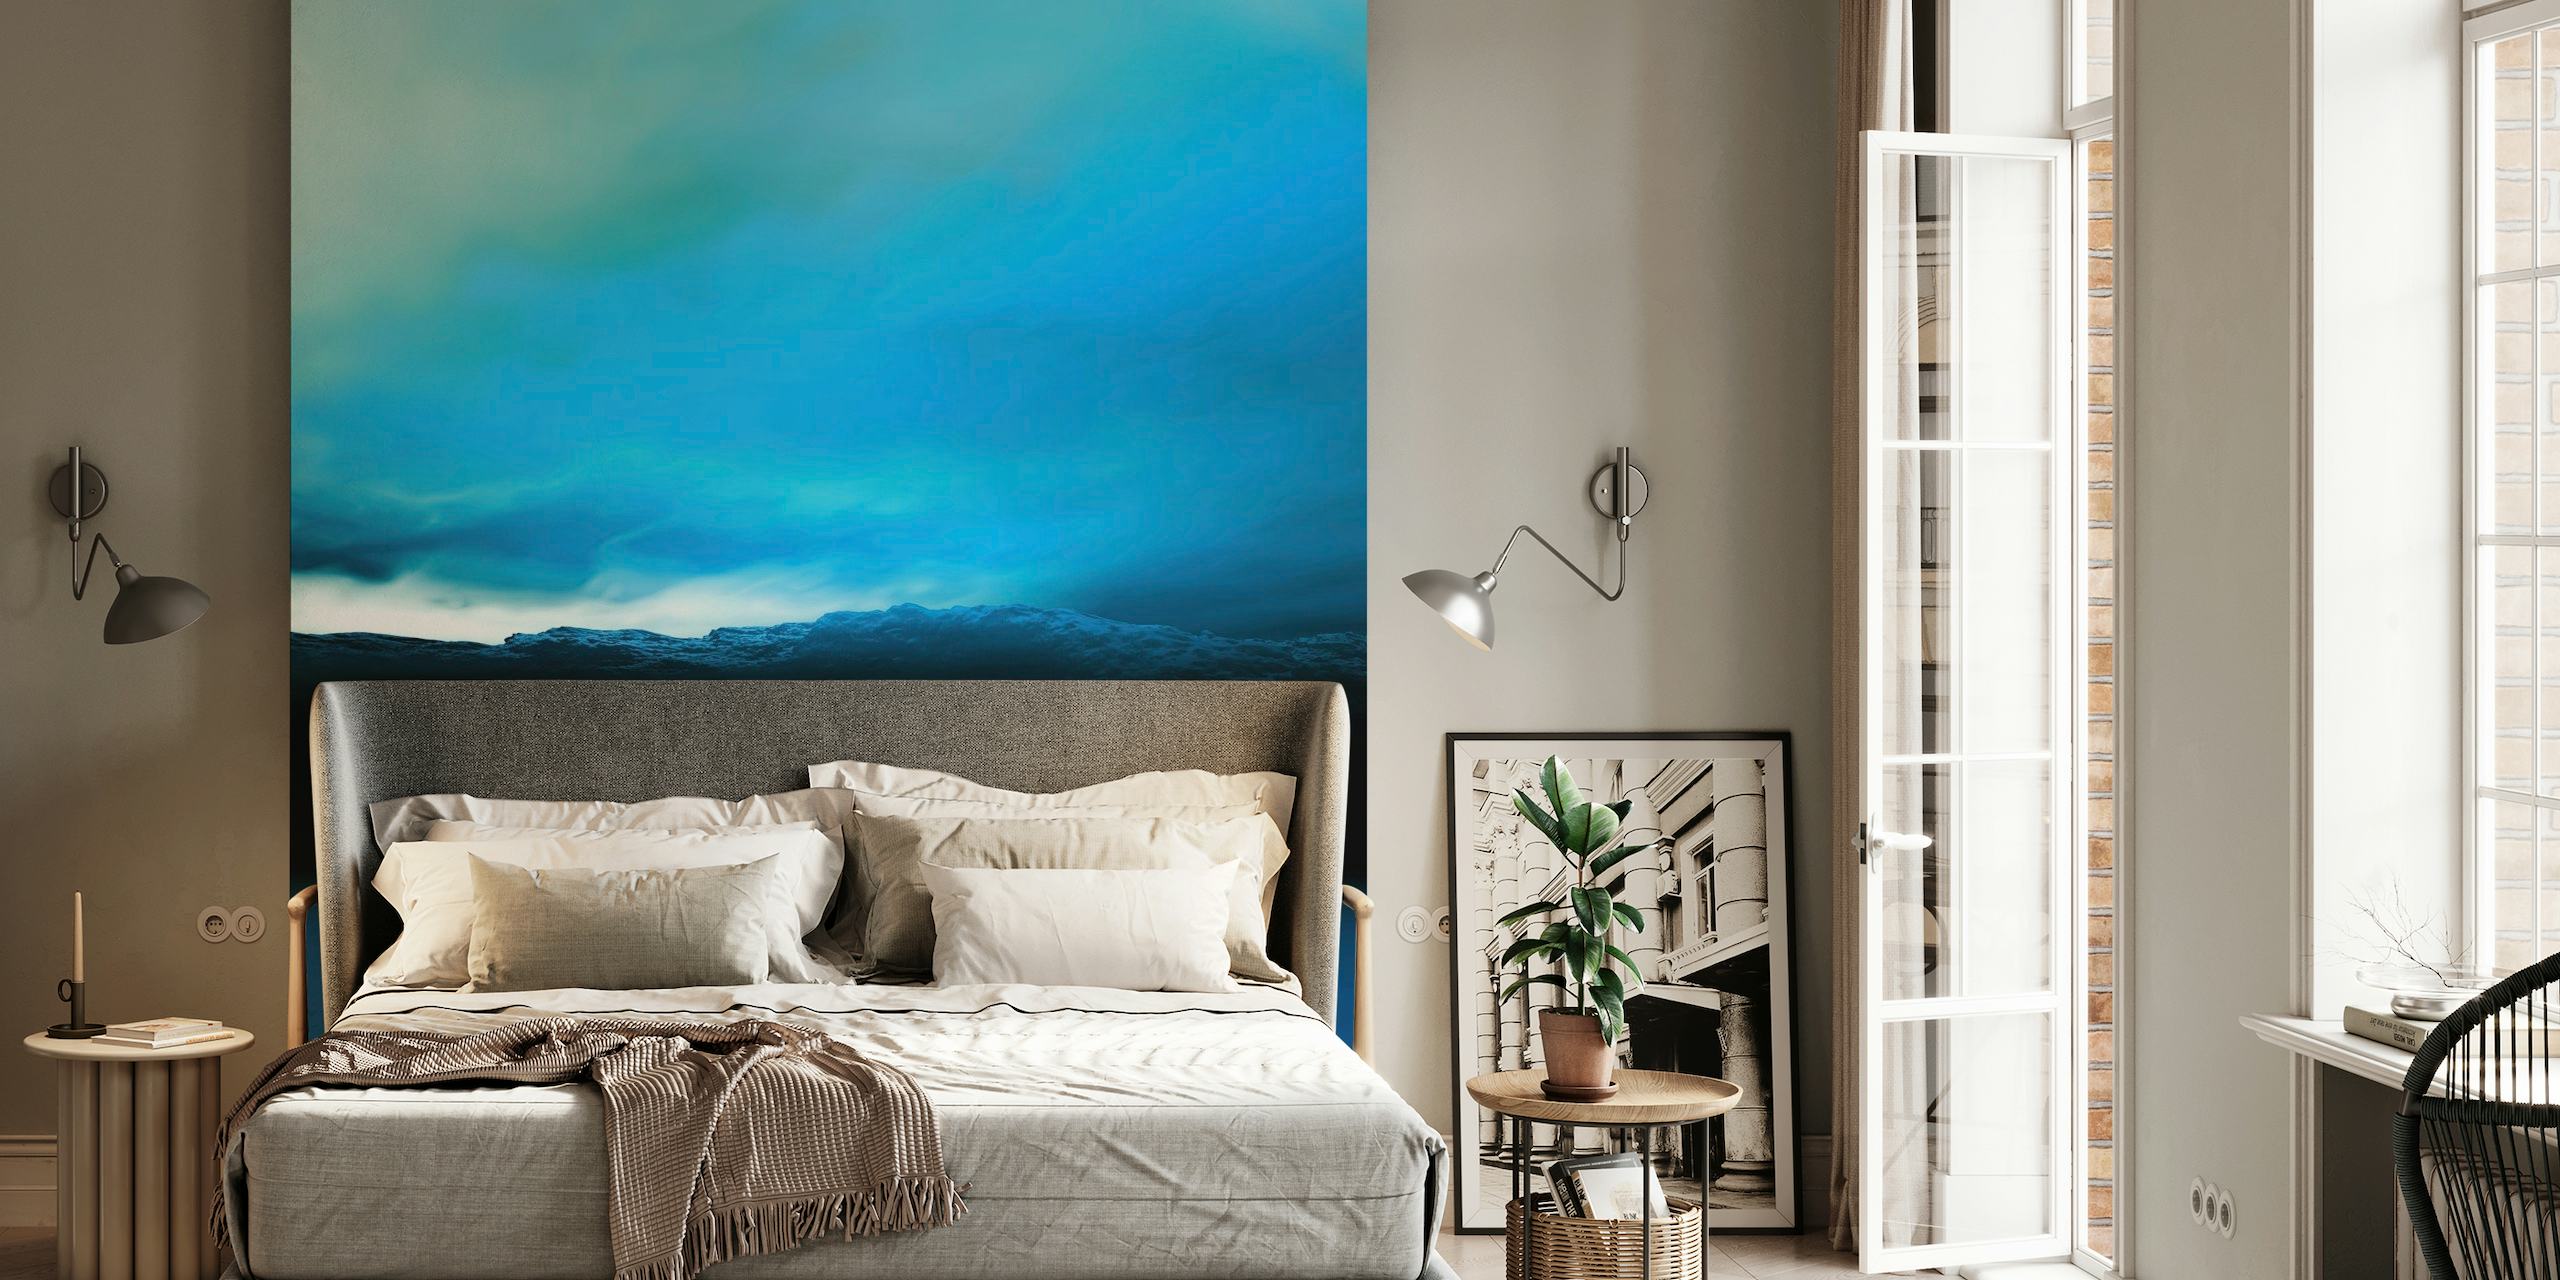 Bläuliches Sonnenuntergang-Wandbild mit ruhigen Blautönen und dunklen Landschaftssilhouetten